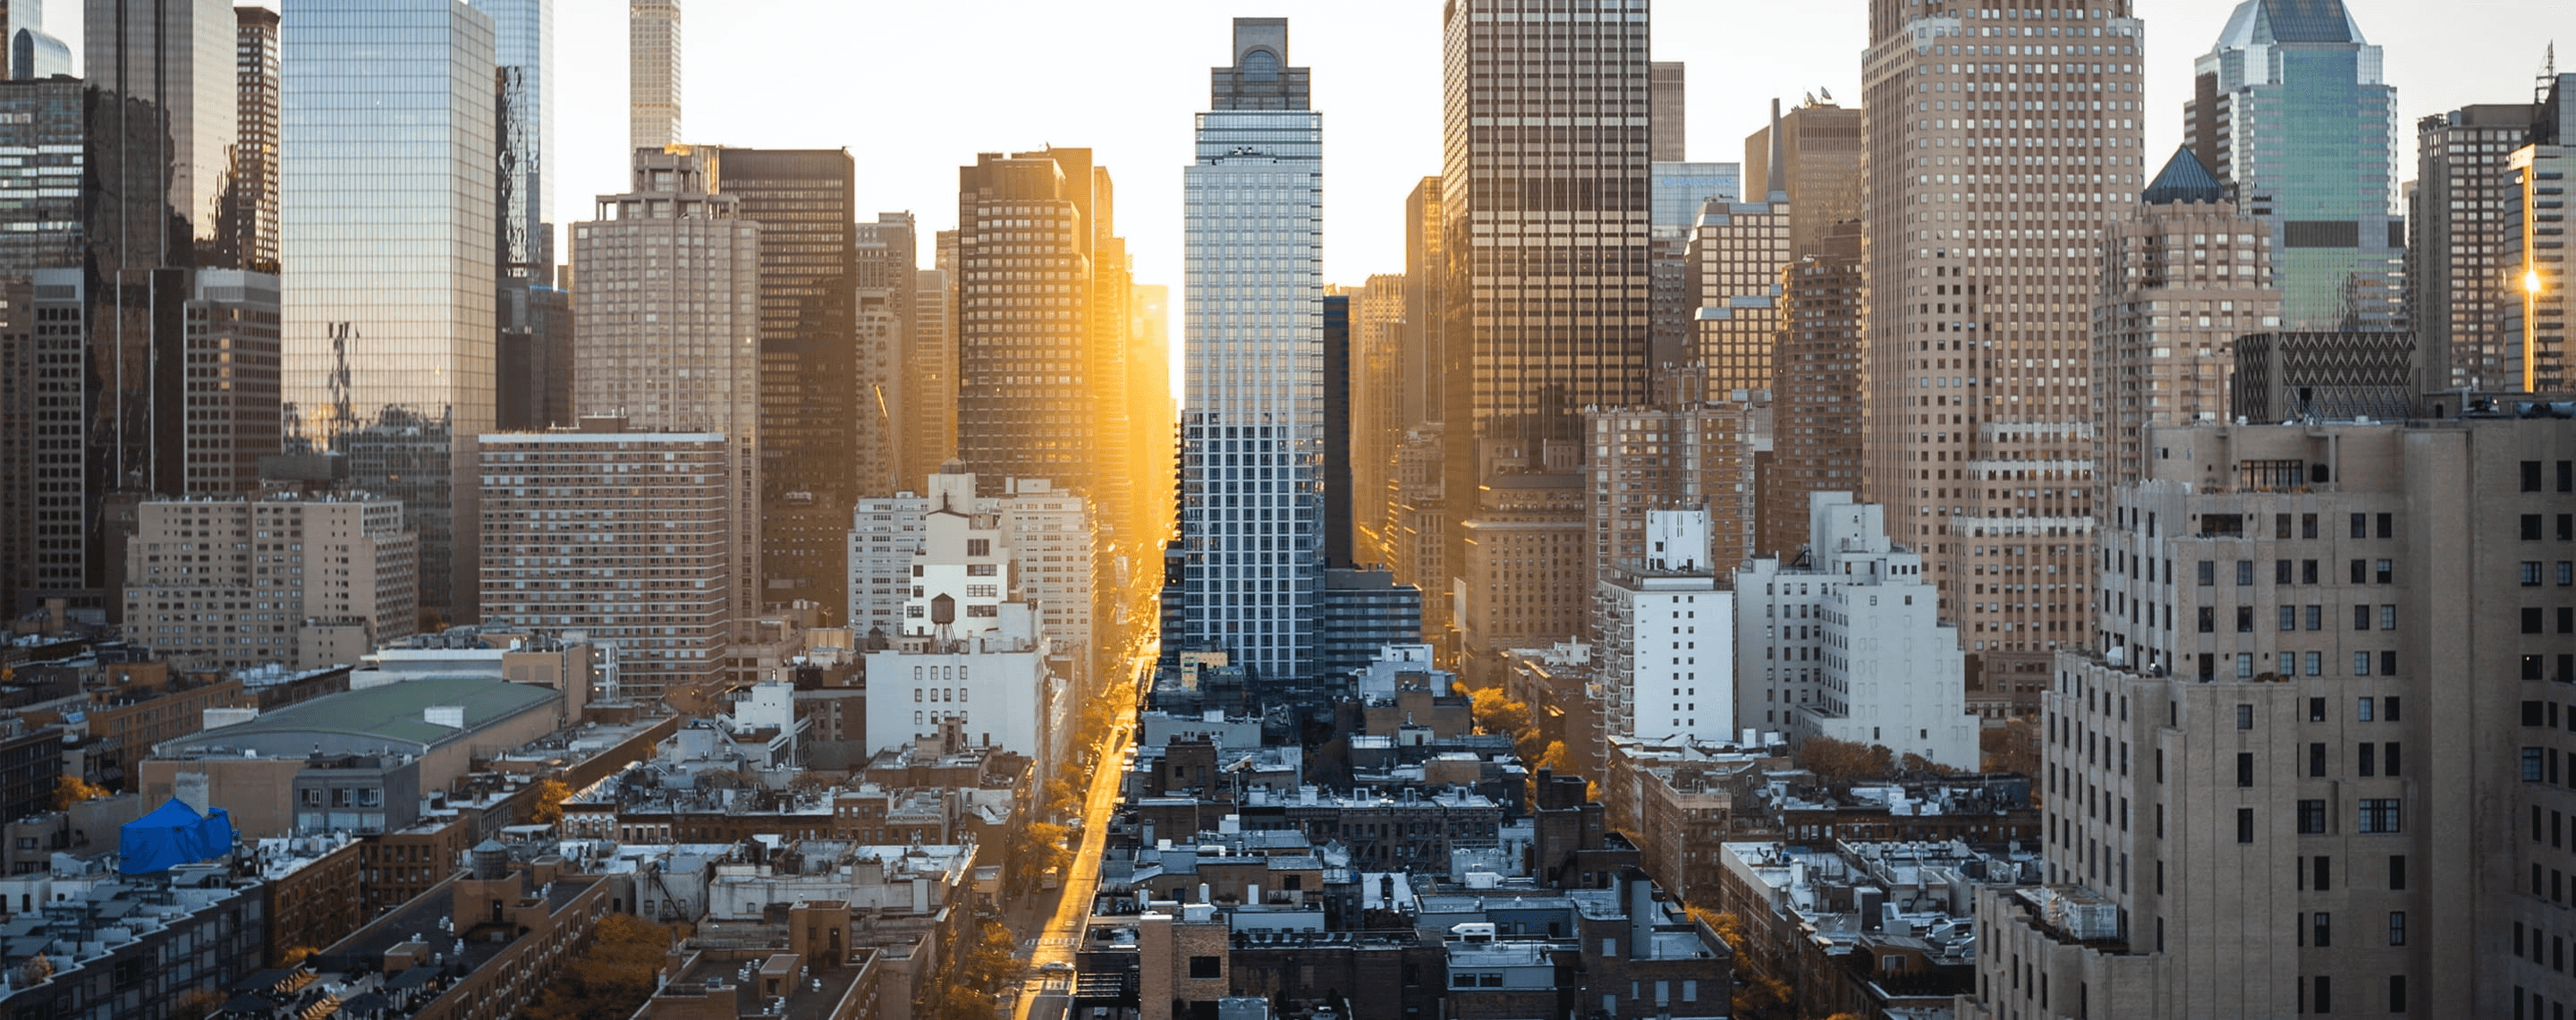 Blick in die City von New York, USA